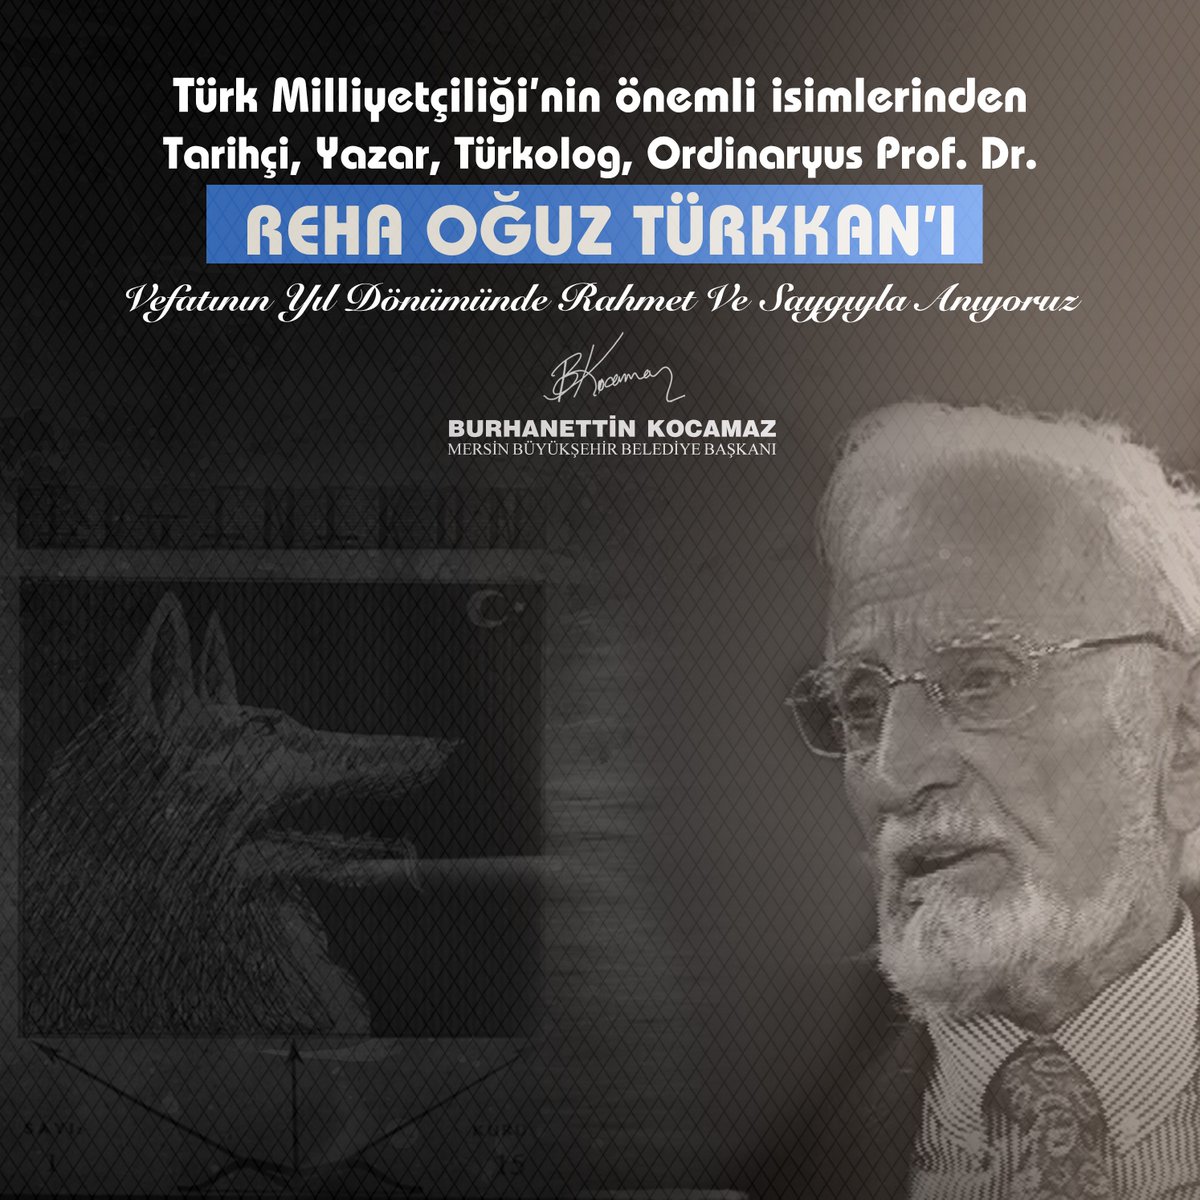 Tarihçi, Yazar, Türkolog, Ordinaryüs Prof. Dr. #RehaOğuzTürkkan'ı vefatının yıl dönümünde rahmet ve saygıyla anıyoruz.